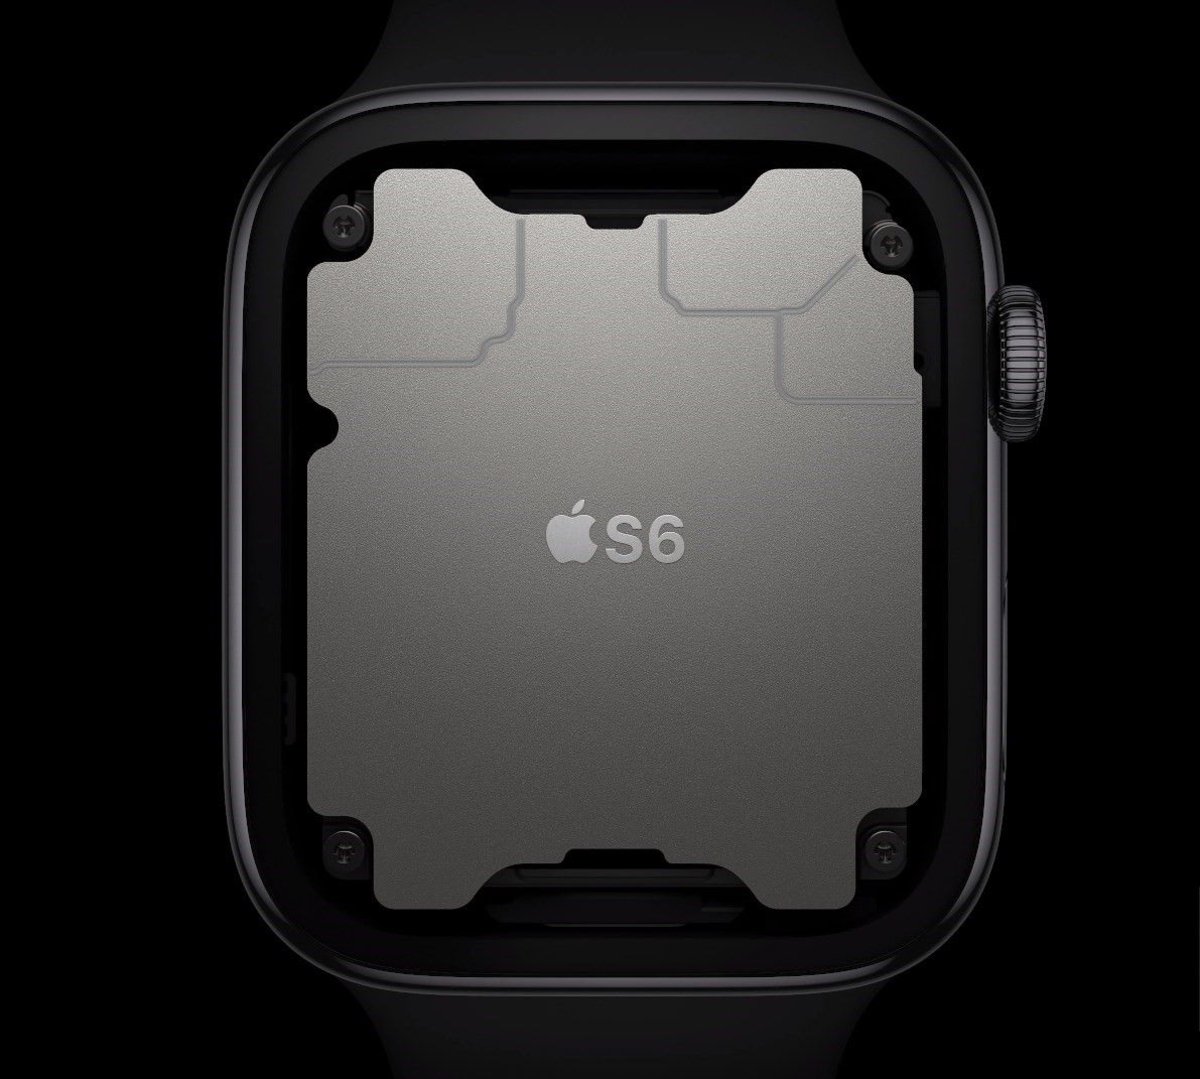 procesador S6 apple watch series 6